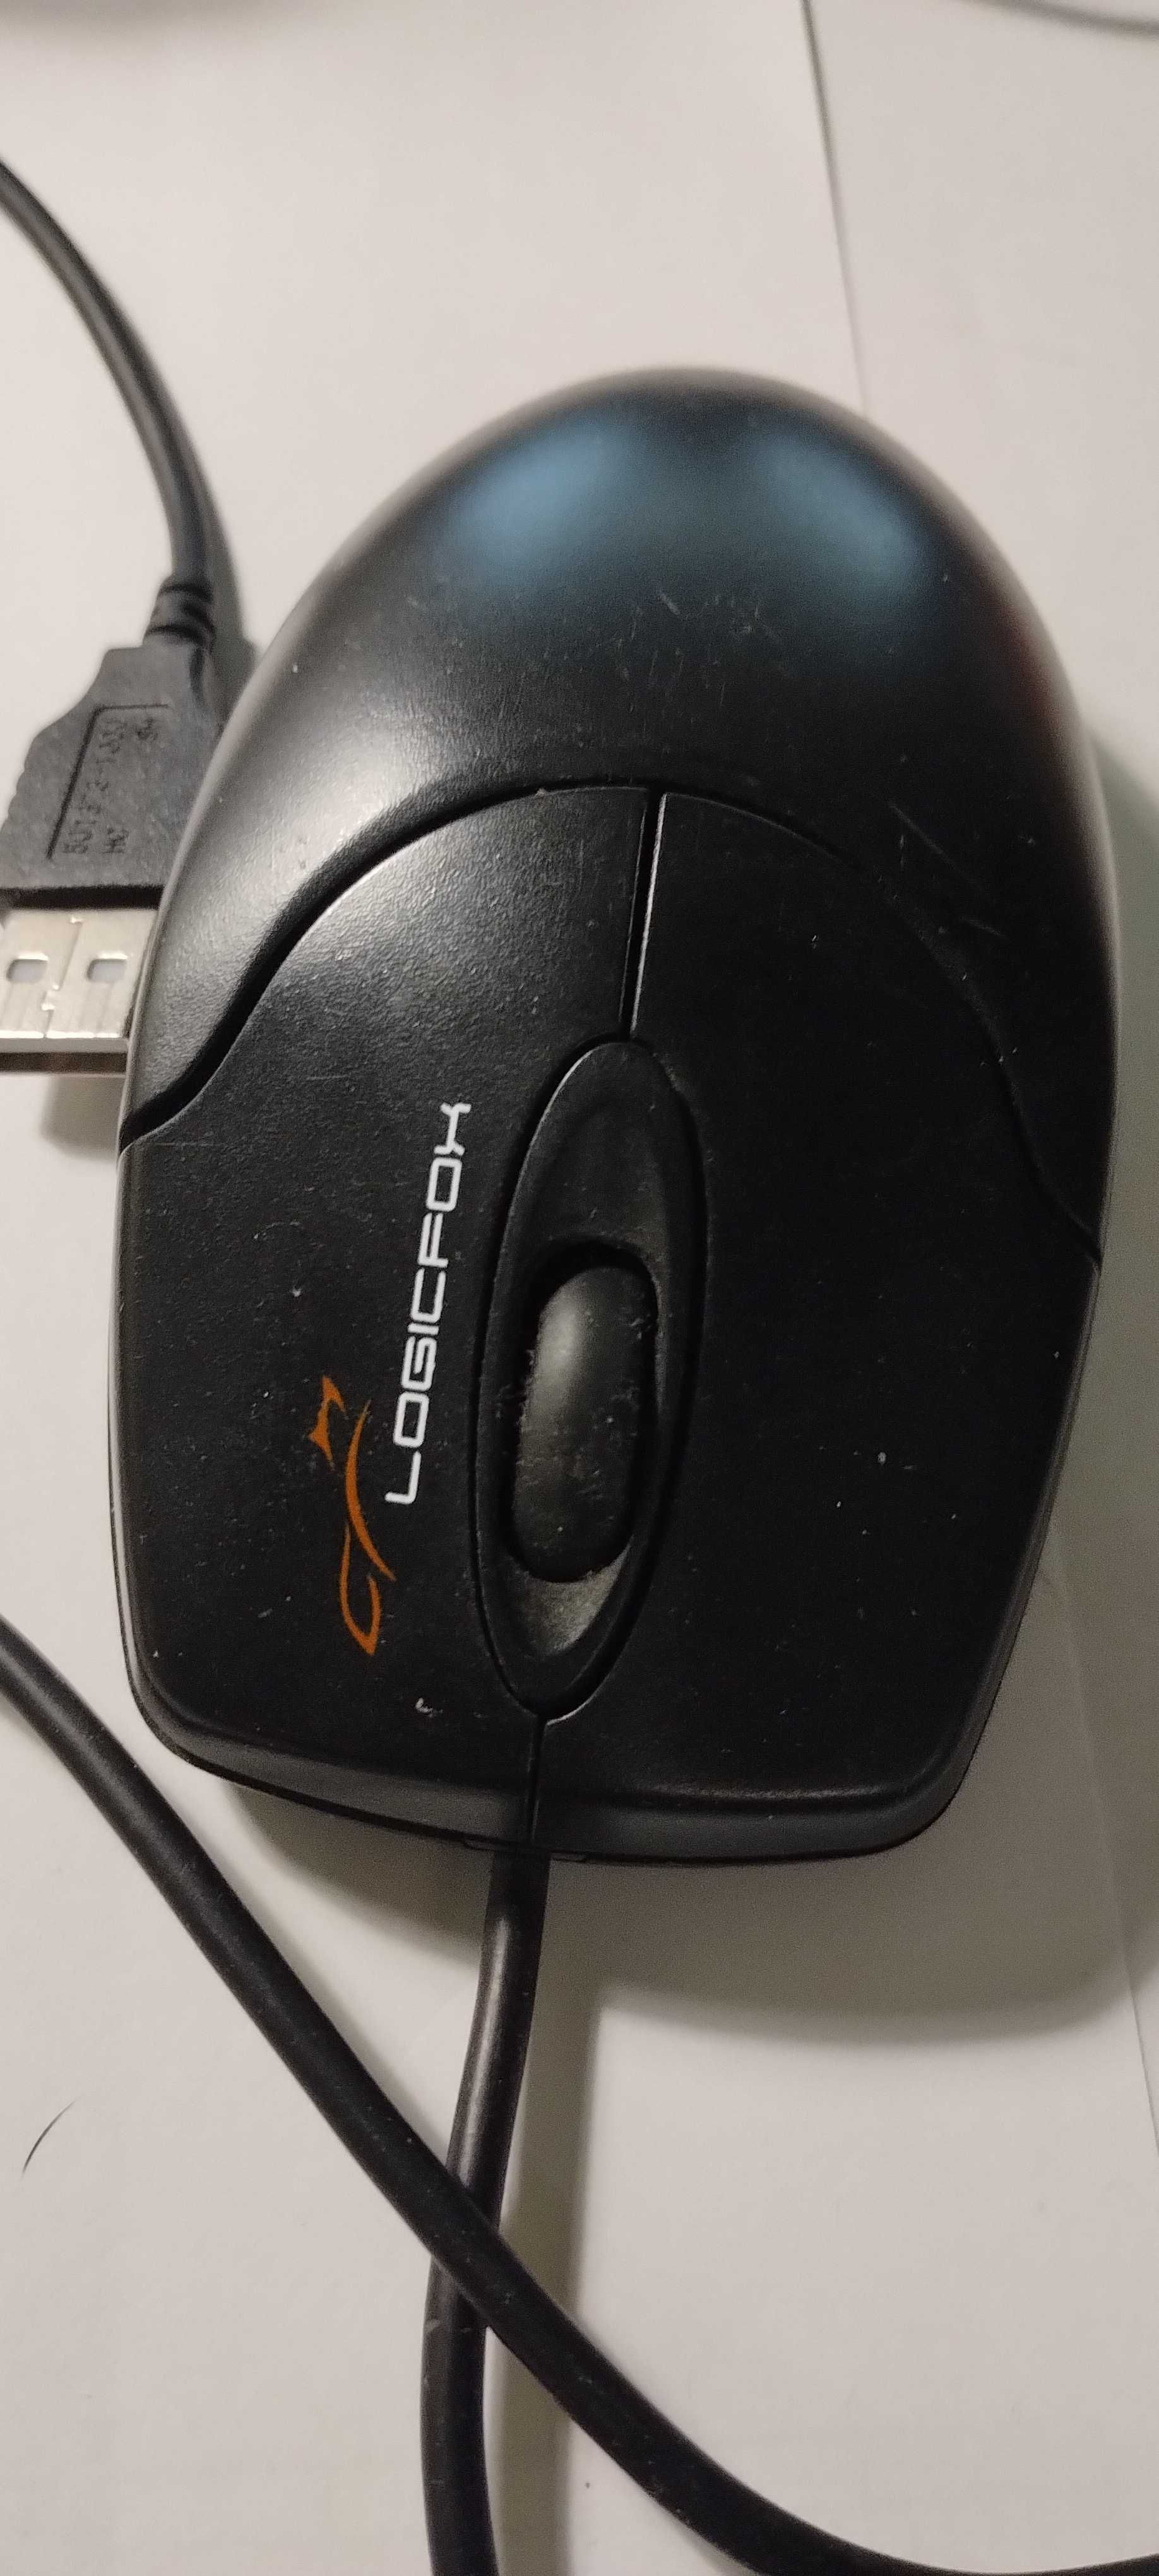 продам мышь компьютерную